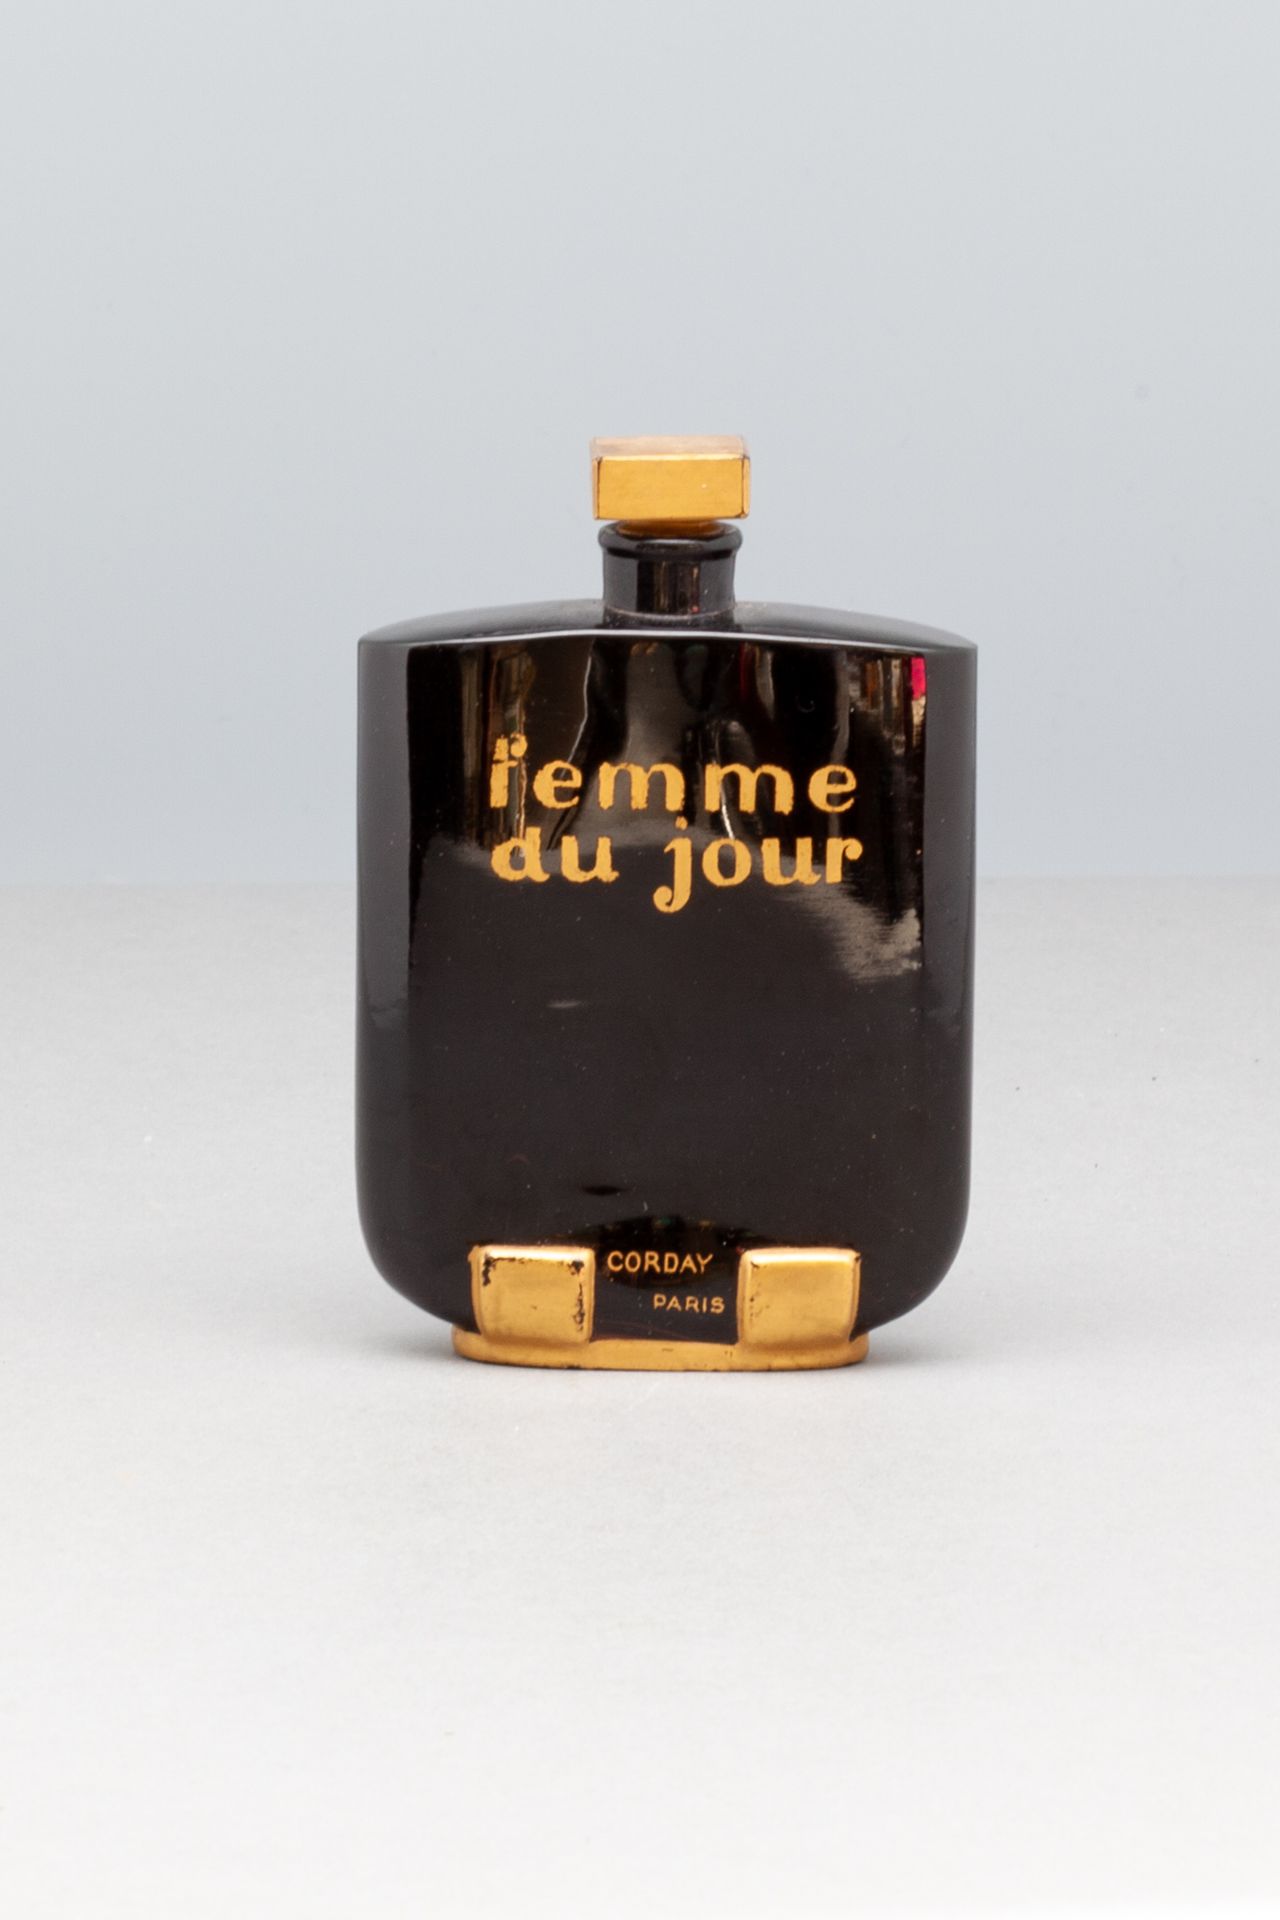 CORDAY "FEMME DU JOUR" 黑色和金色的BACCARAT水晶瓶。底下有 "BACCARAT "的签名。高10厘米